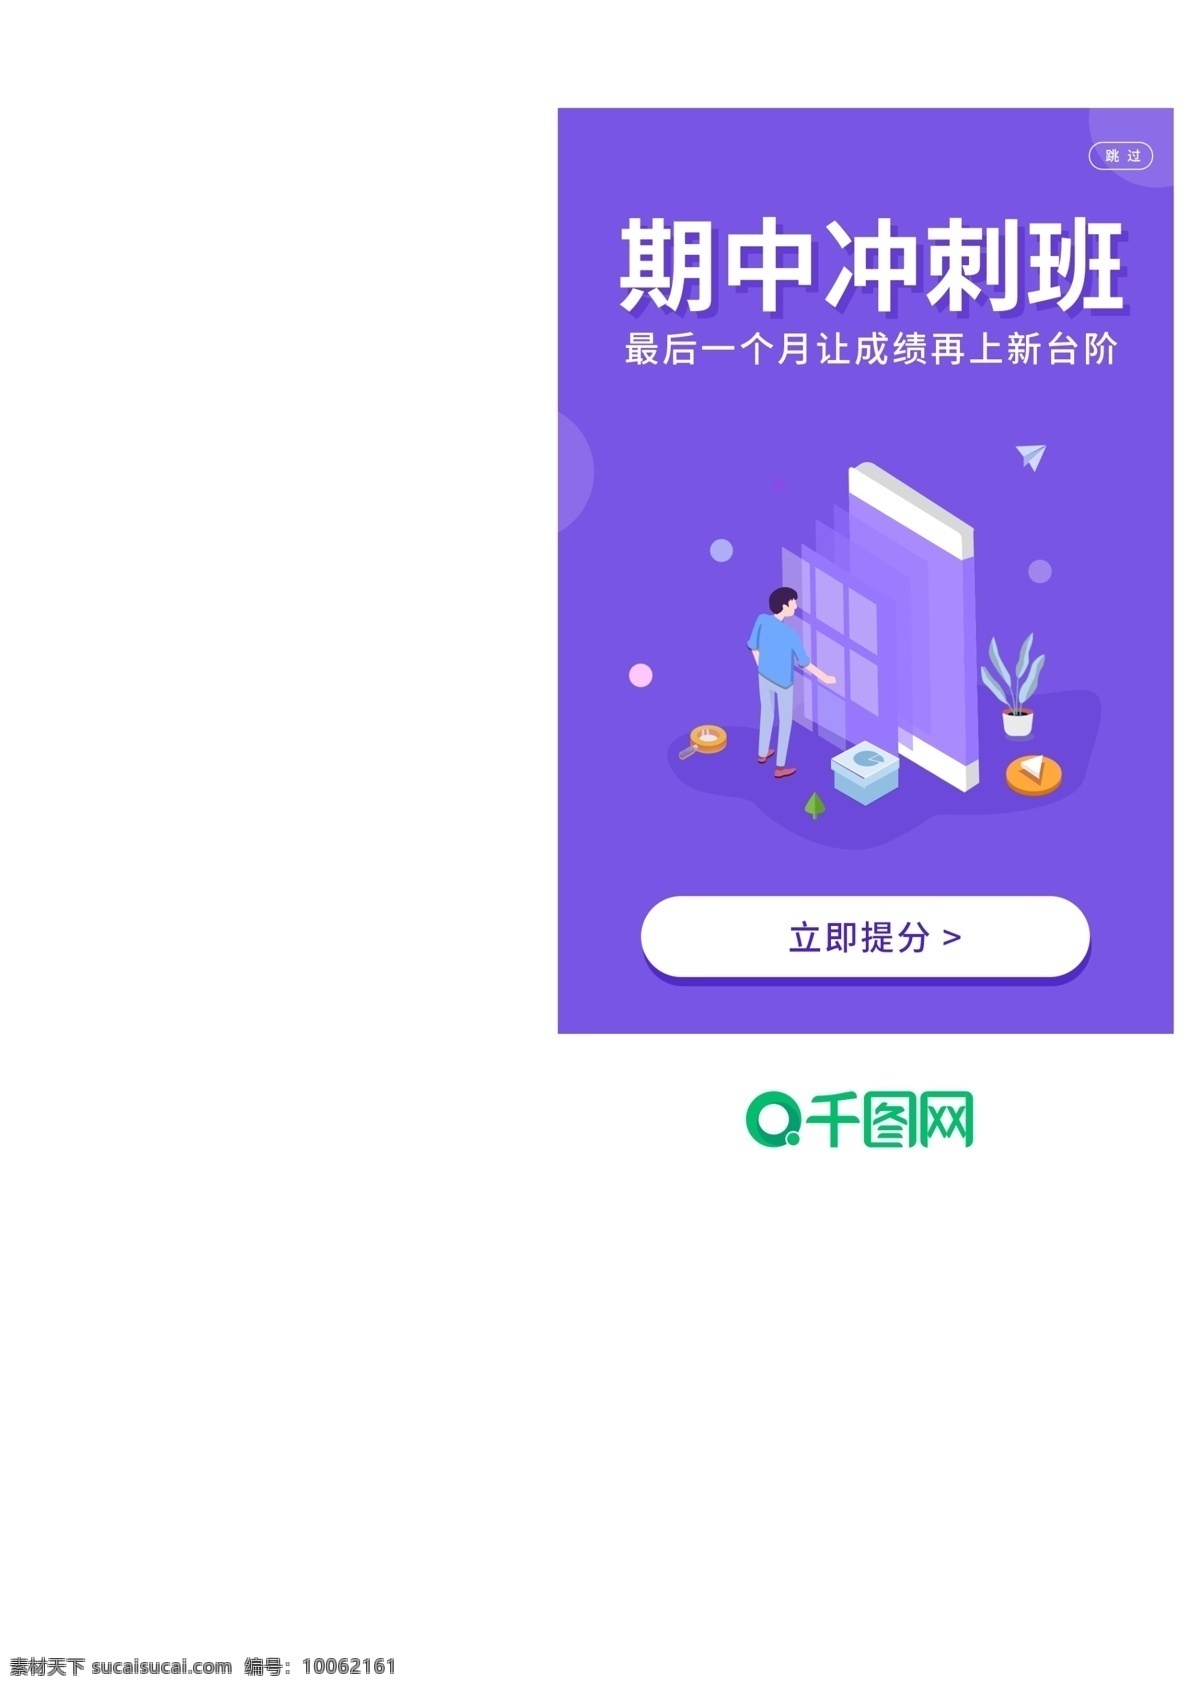 教育 app 启动 页 学习 小清新 蓝色 紫色